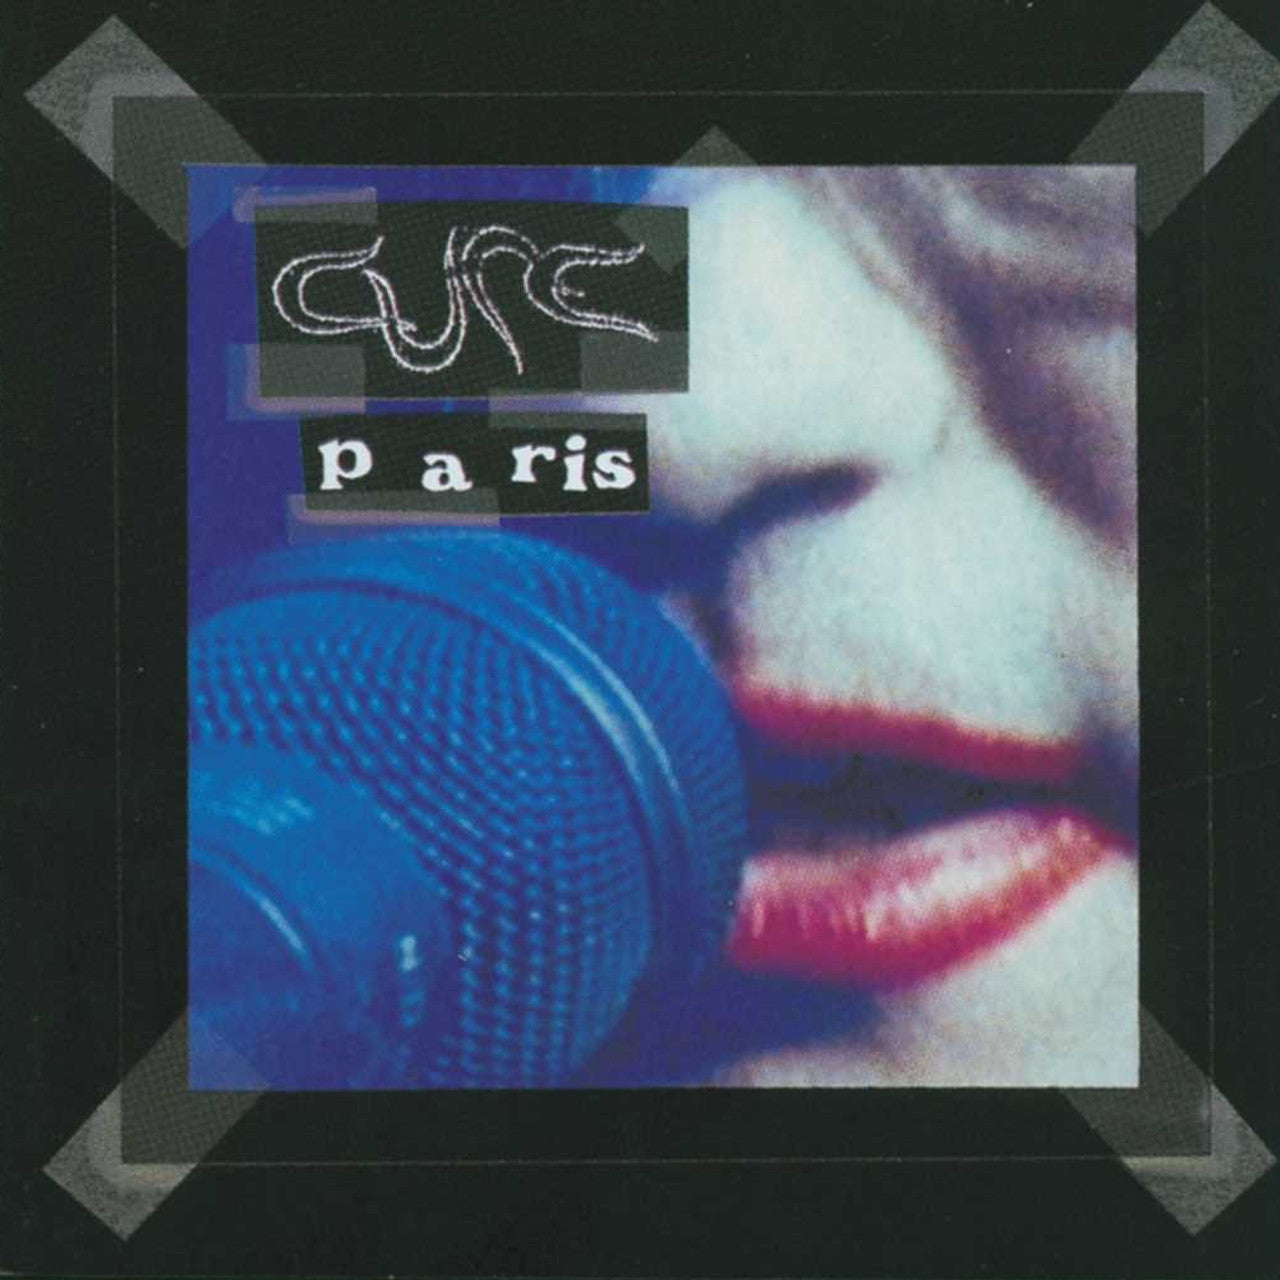 Order The Cure - Paris (2xLP Vinyl)